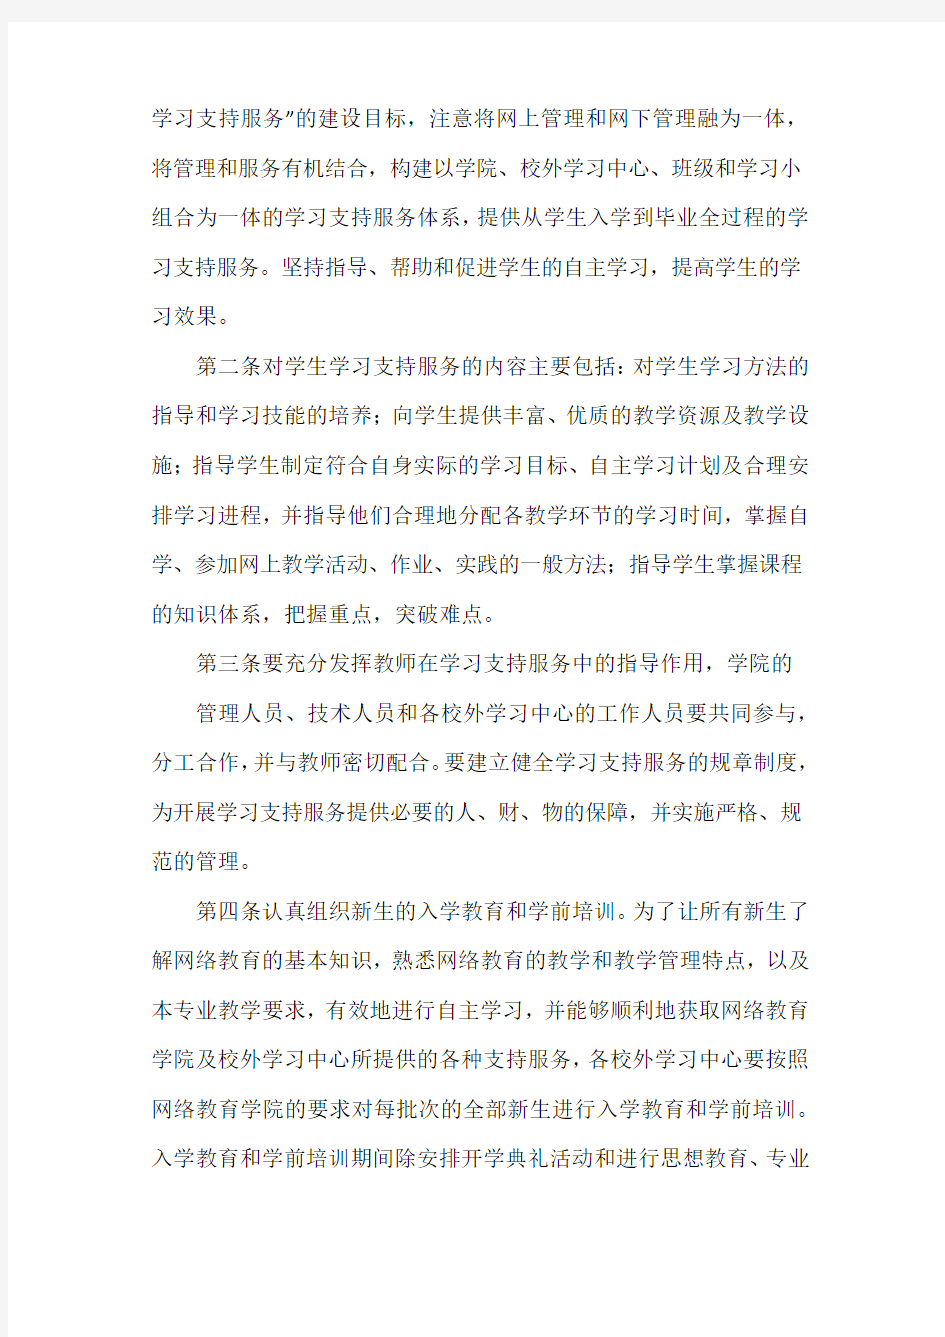 重庆大学网络教育学院关于加强学生学习支持服务的意见